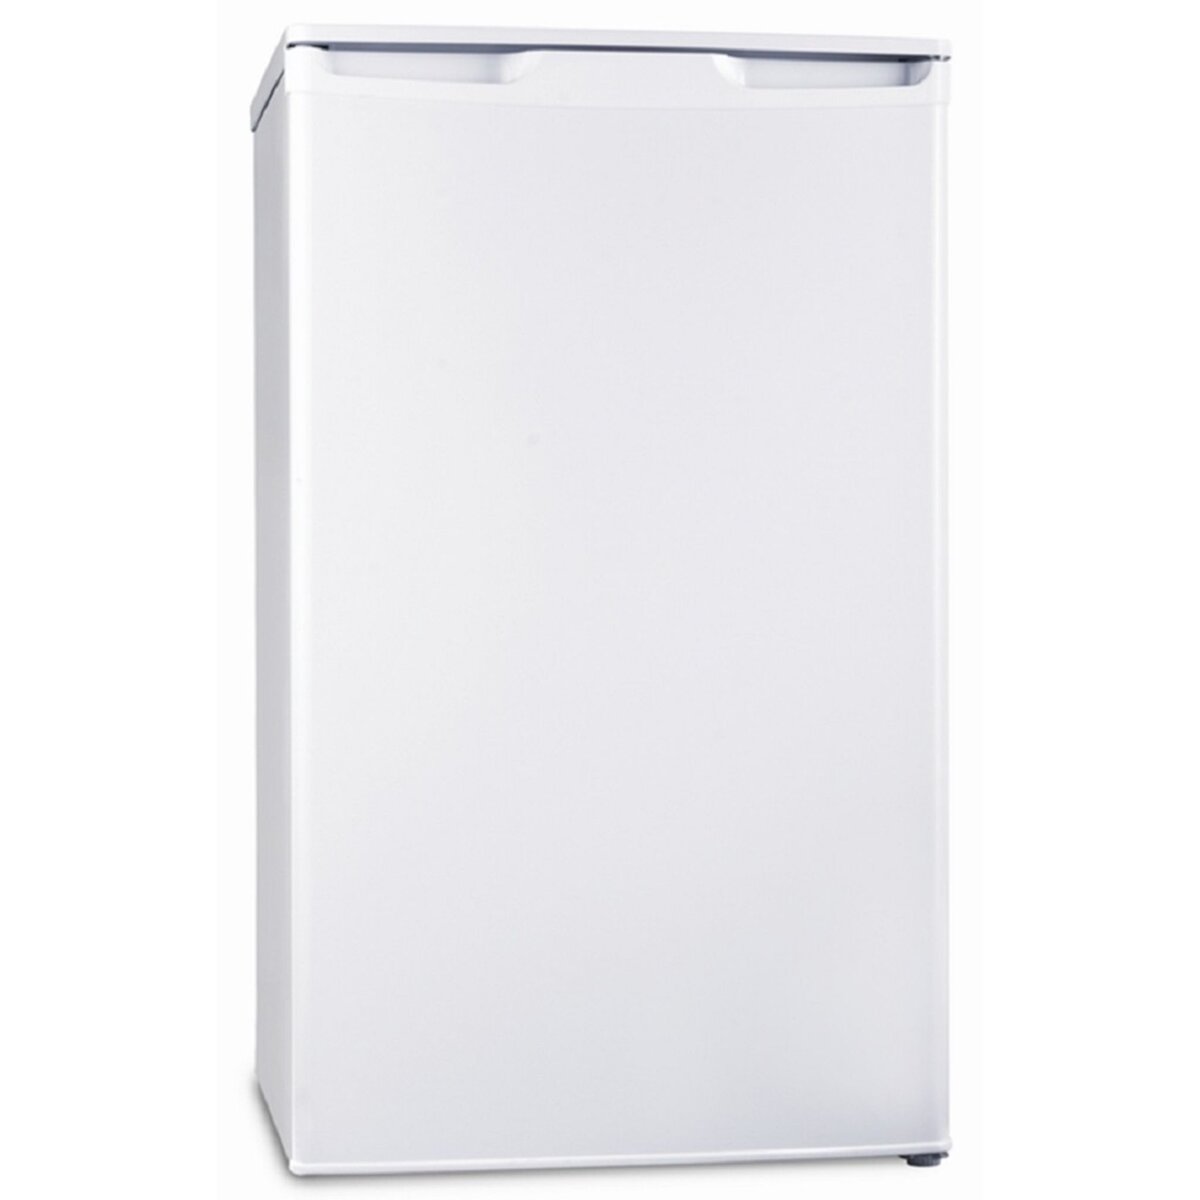 QILIVE Réfrigérateur table top 893243 / Q.6092, 96 L, Froid statique